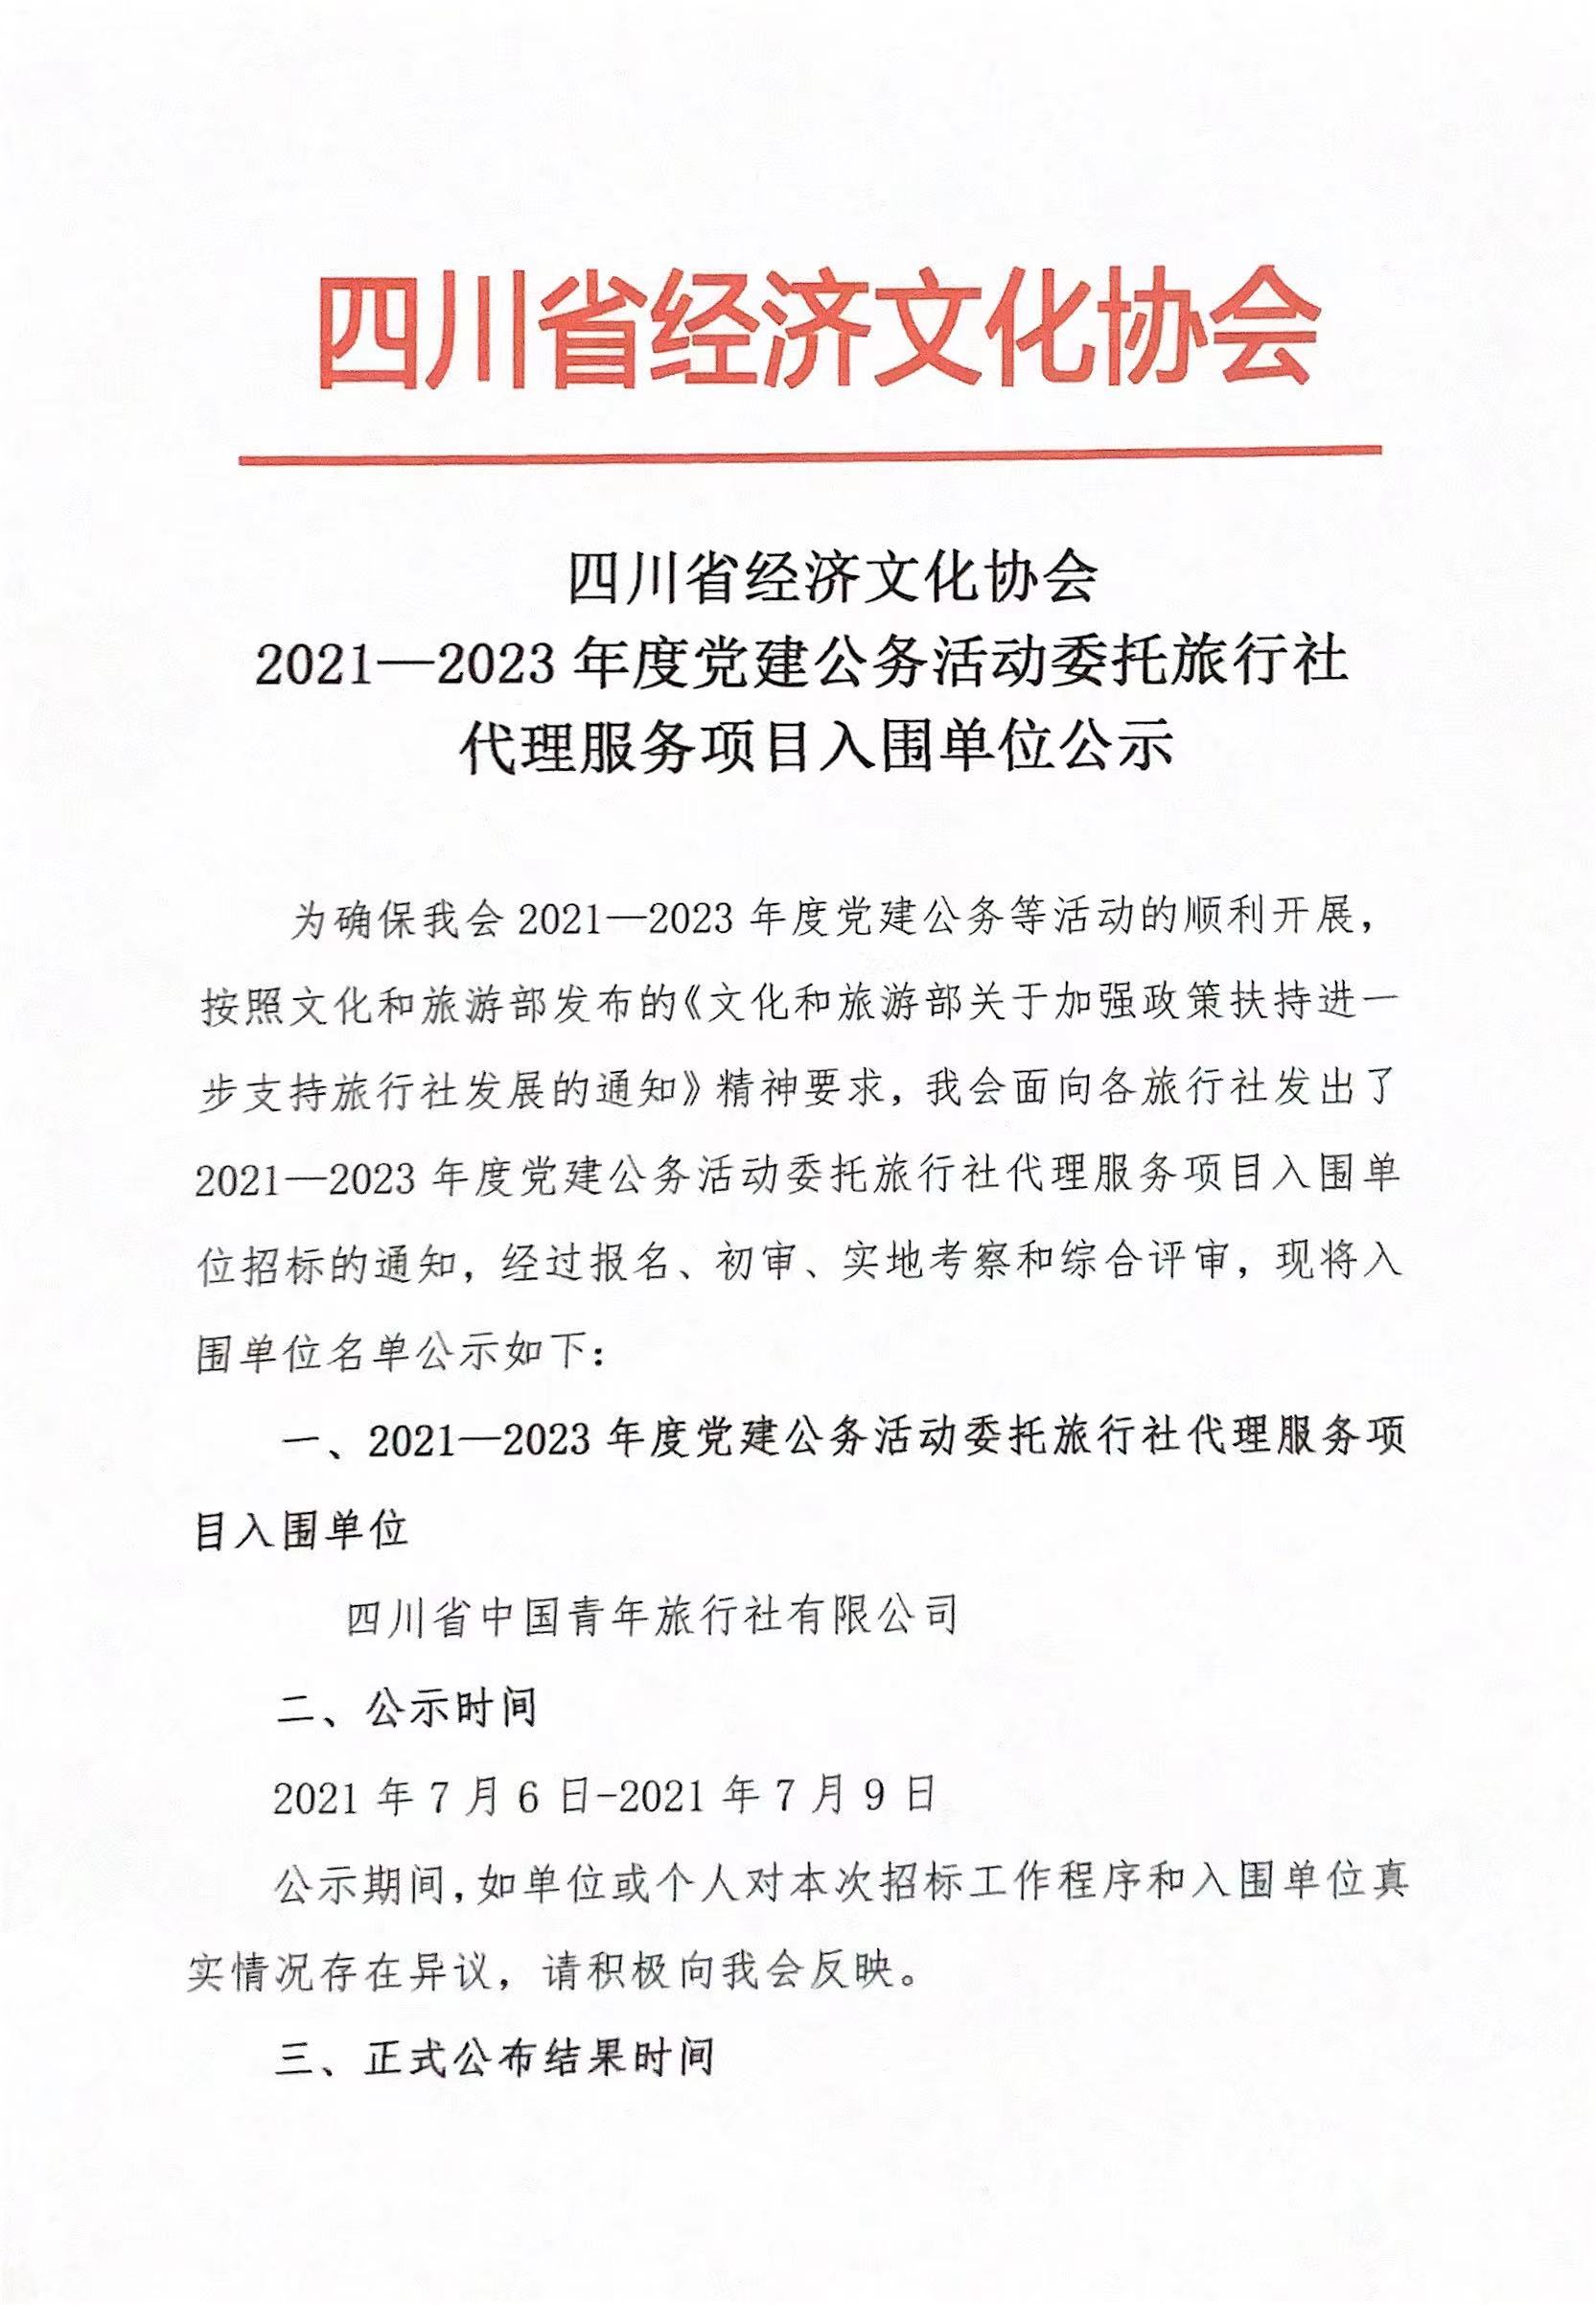 2021-2022年度党建公务活动委托旅行社代理服务入围公示